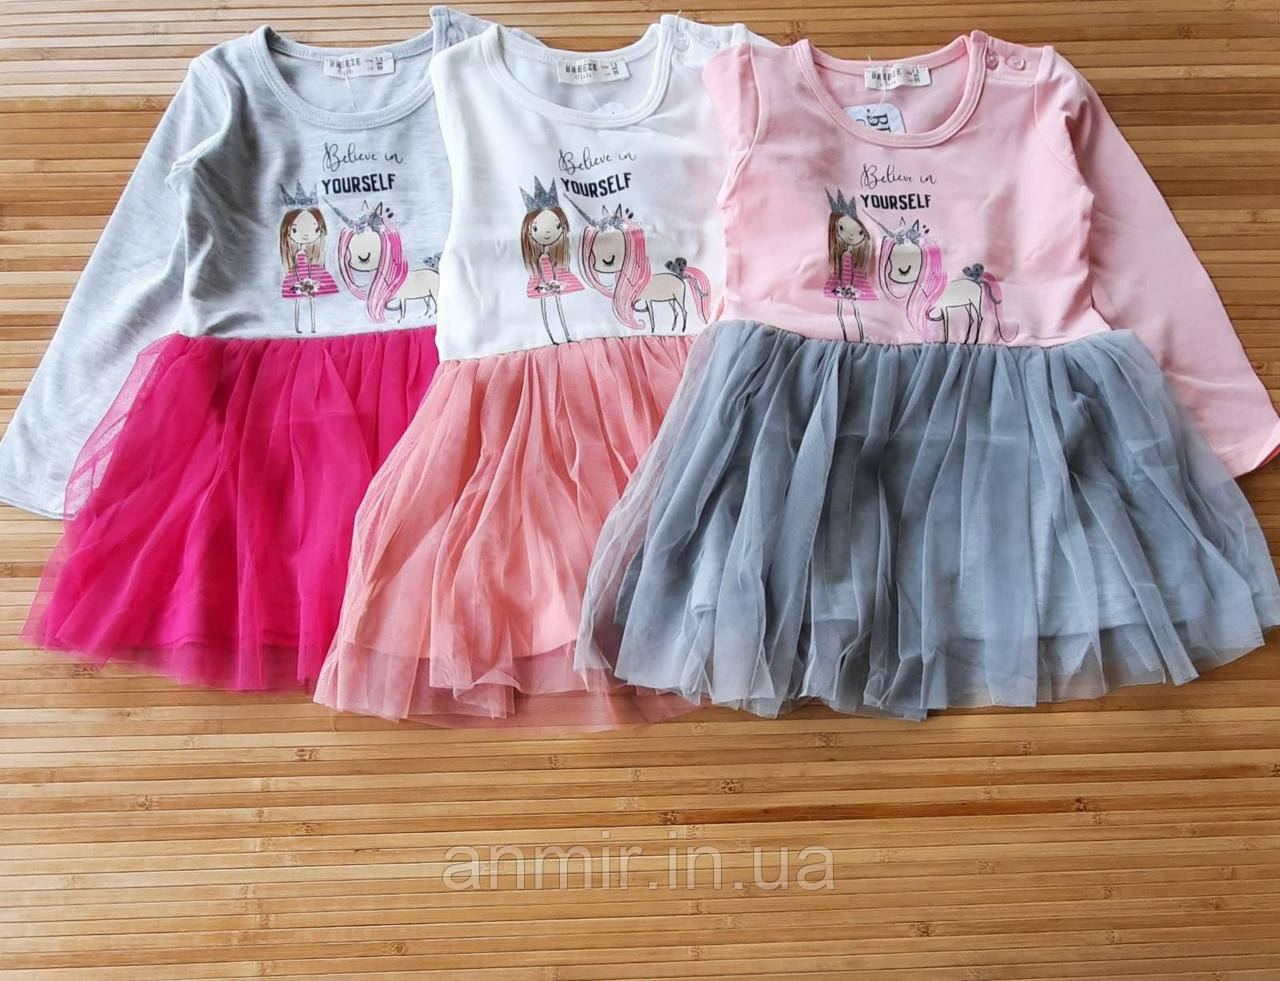 Дитяче плаття YOURSELF для дівчинки 1-5 років, колір уточнюйте під час замовлення